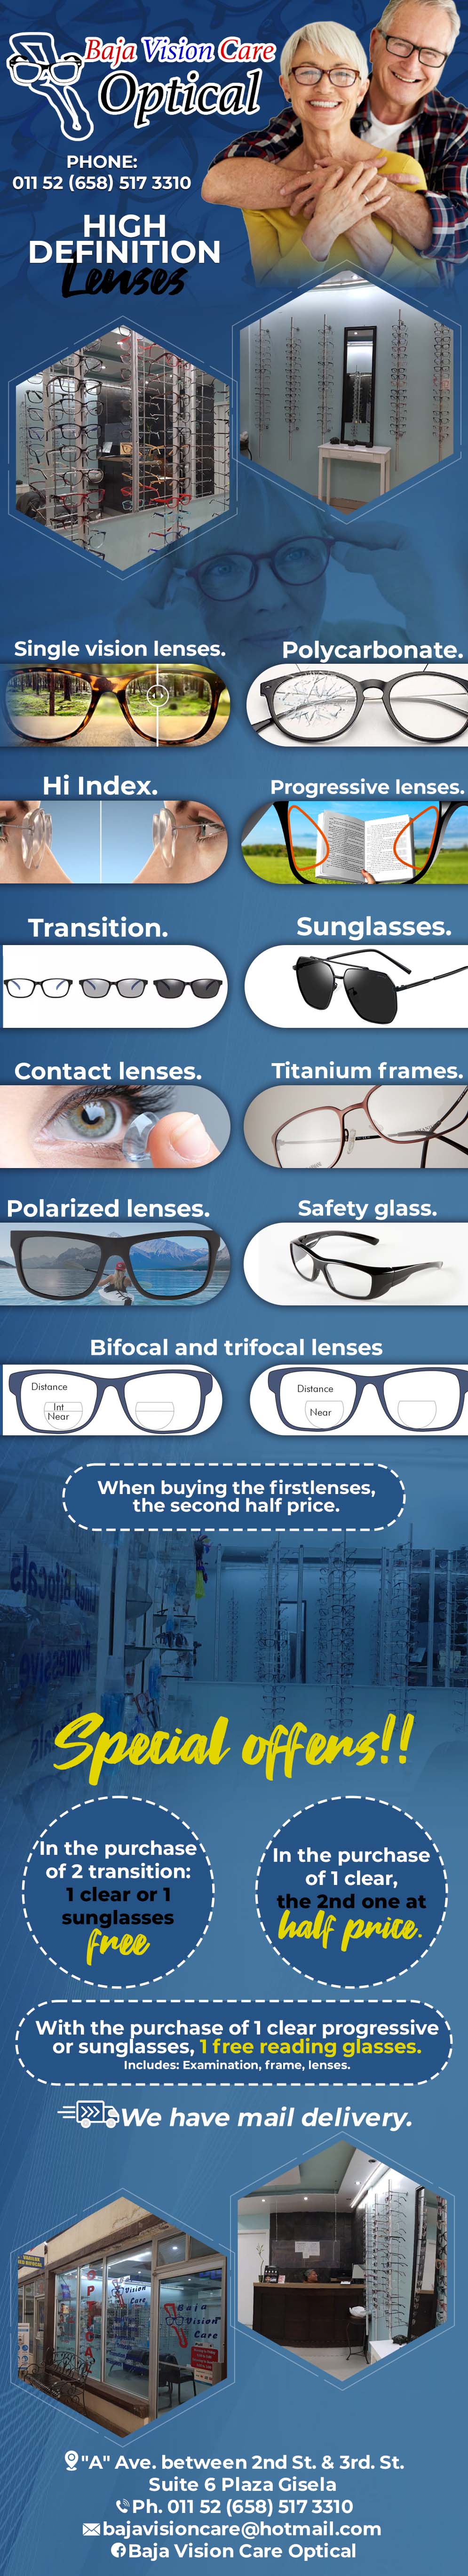 Baja  Vision Care Optical in Algodones  in Algodones  optica     optica lentes anteojos  optical visual baja   